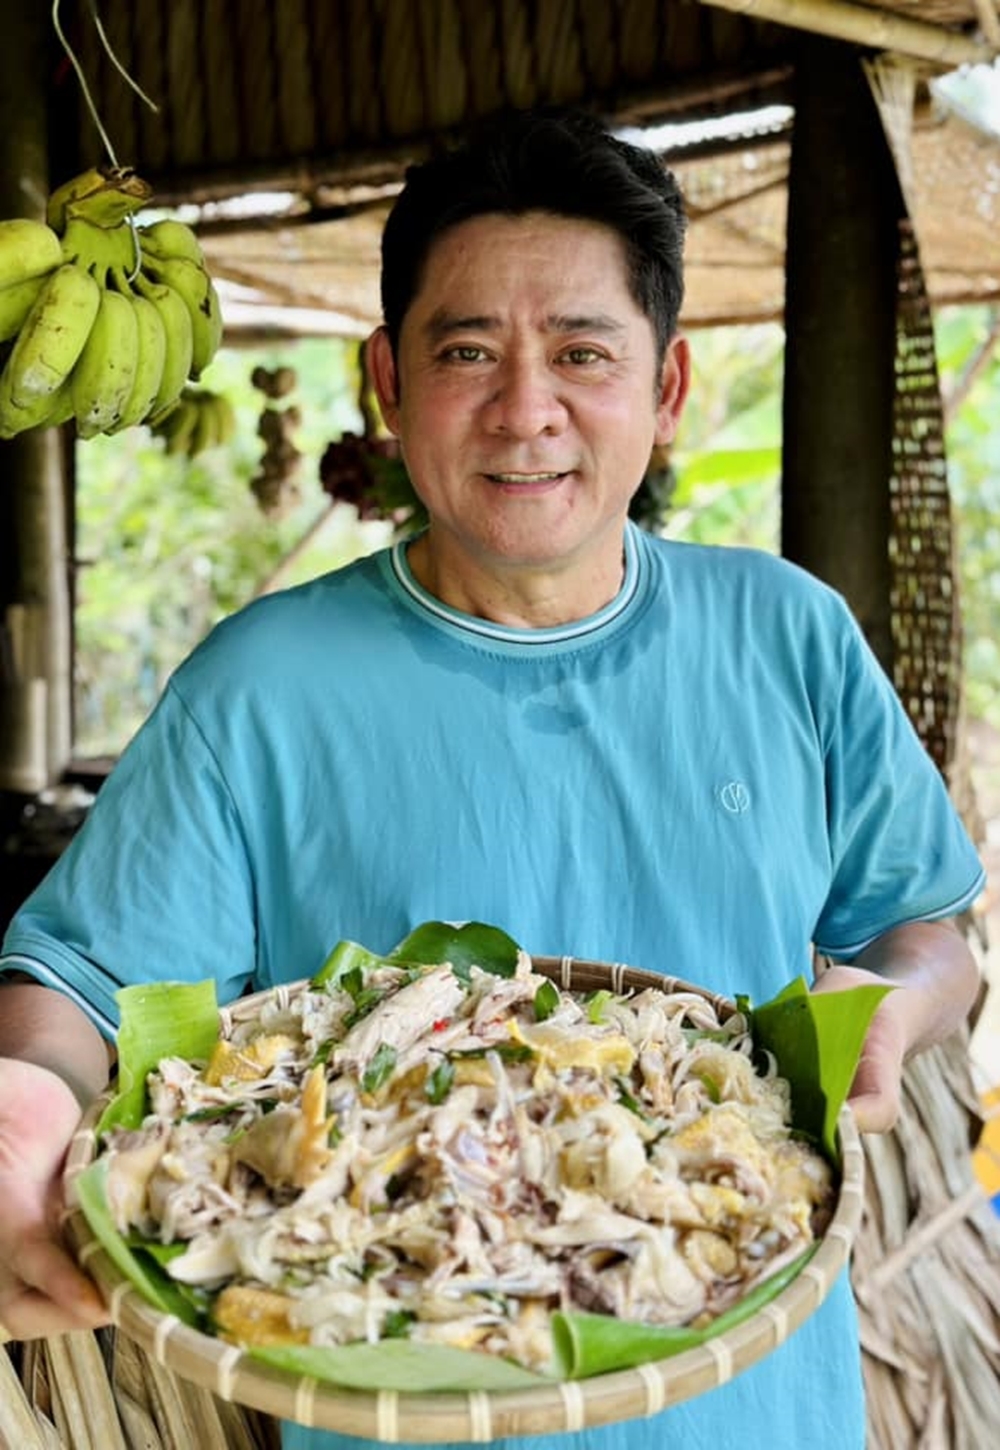 Tài tử màn ảnh Việt một thời: Ở nhà vườn 6.000 m2, tự nấu ăn, quay Tiktok, cuộc sống ngập tiếng cười- Ảnh 3.